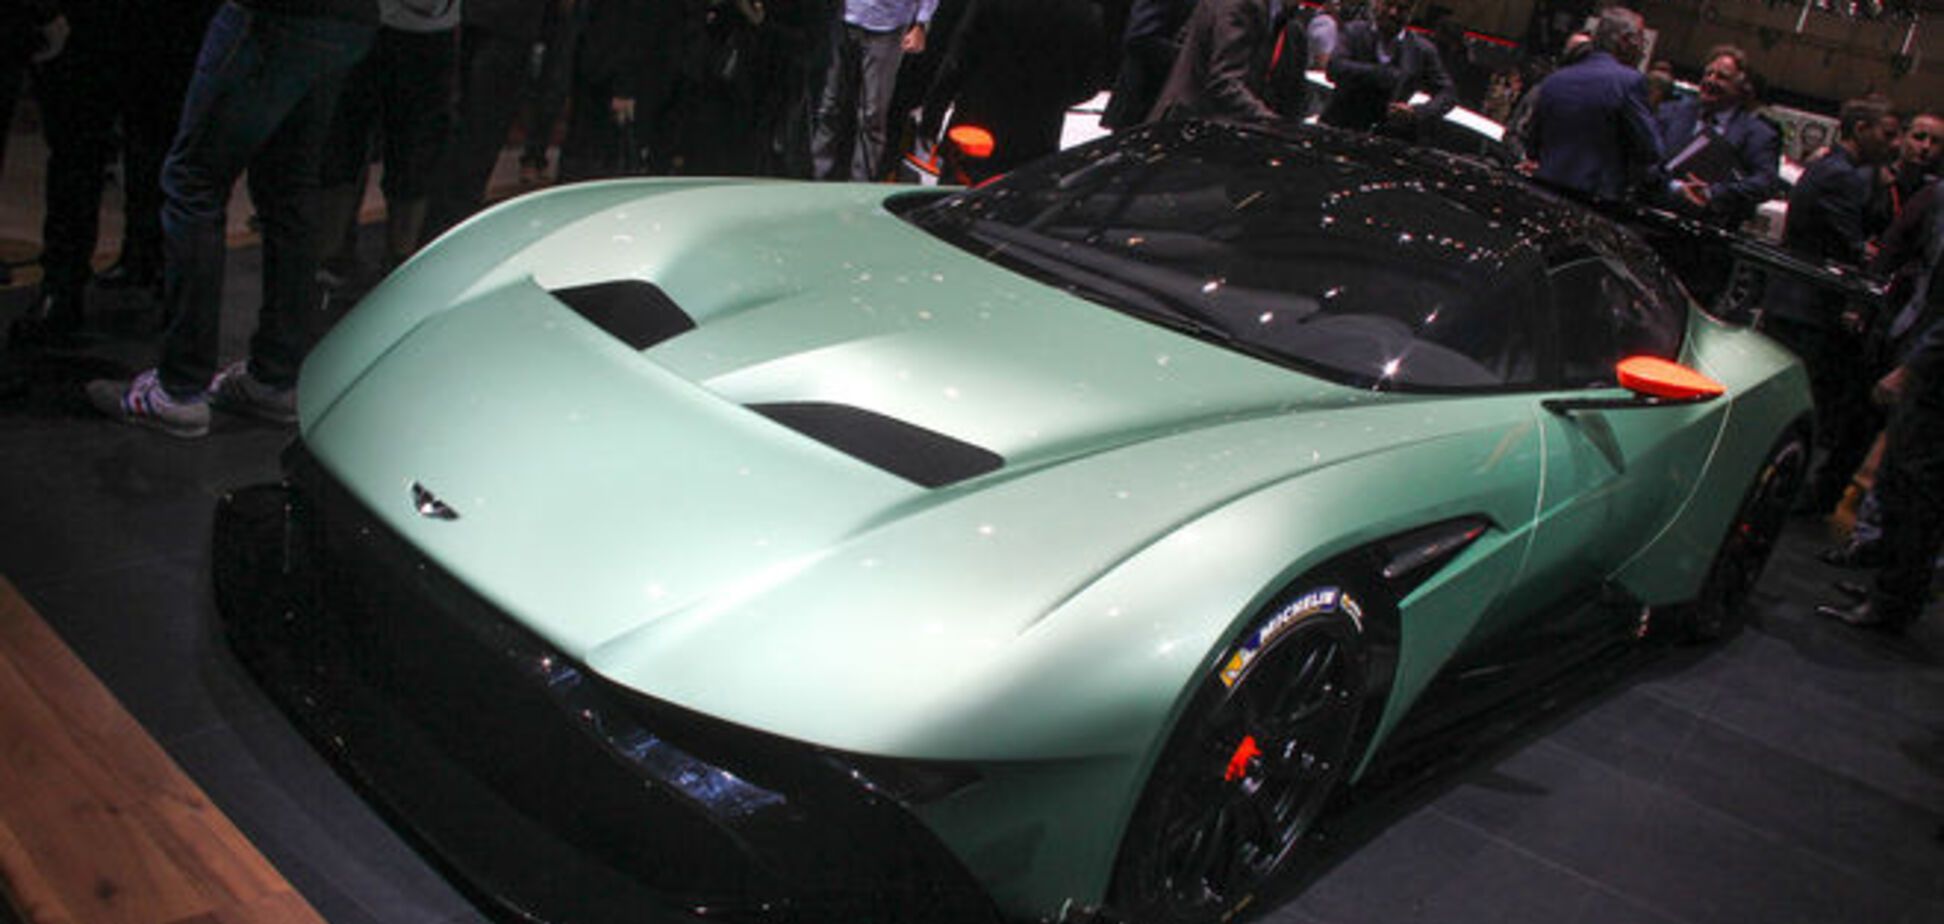 Aston Martin шокировал Женевский автосалон-2015 уникальным авто: фото новинки